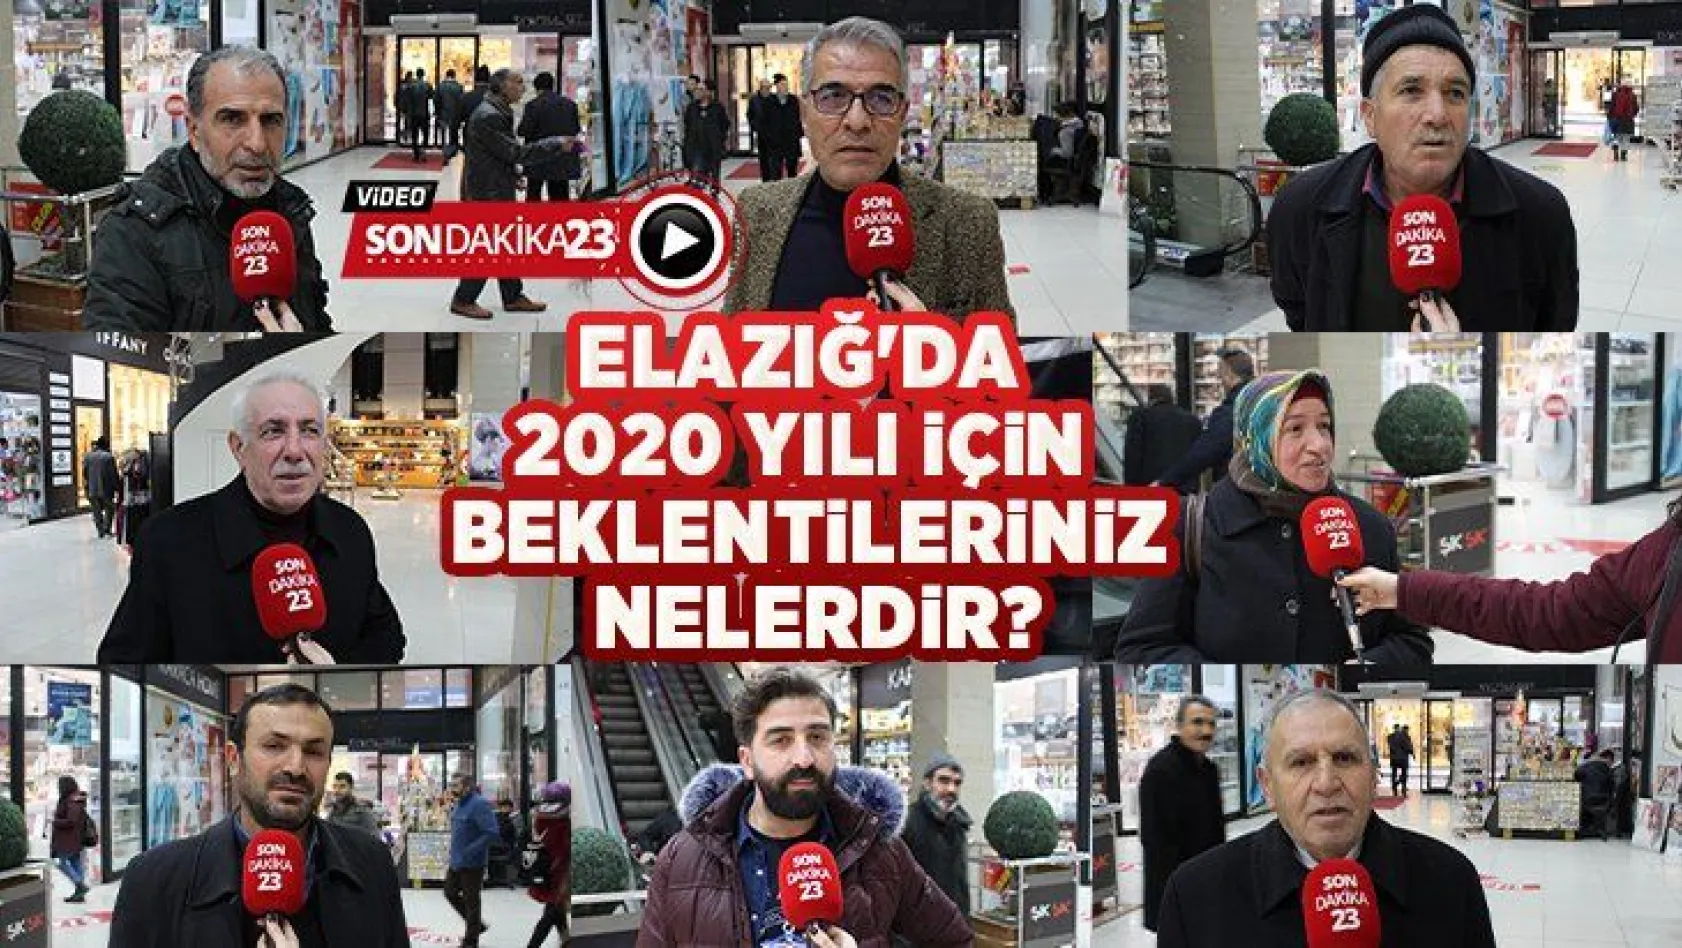 Elazığ'da 2020 yılı için beklentileriniz nelerdir?